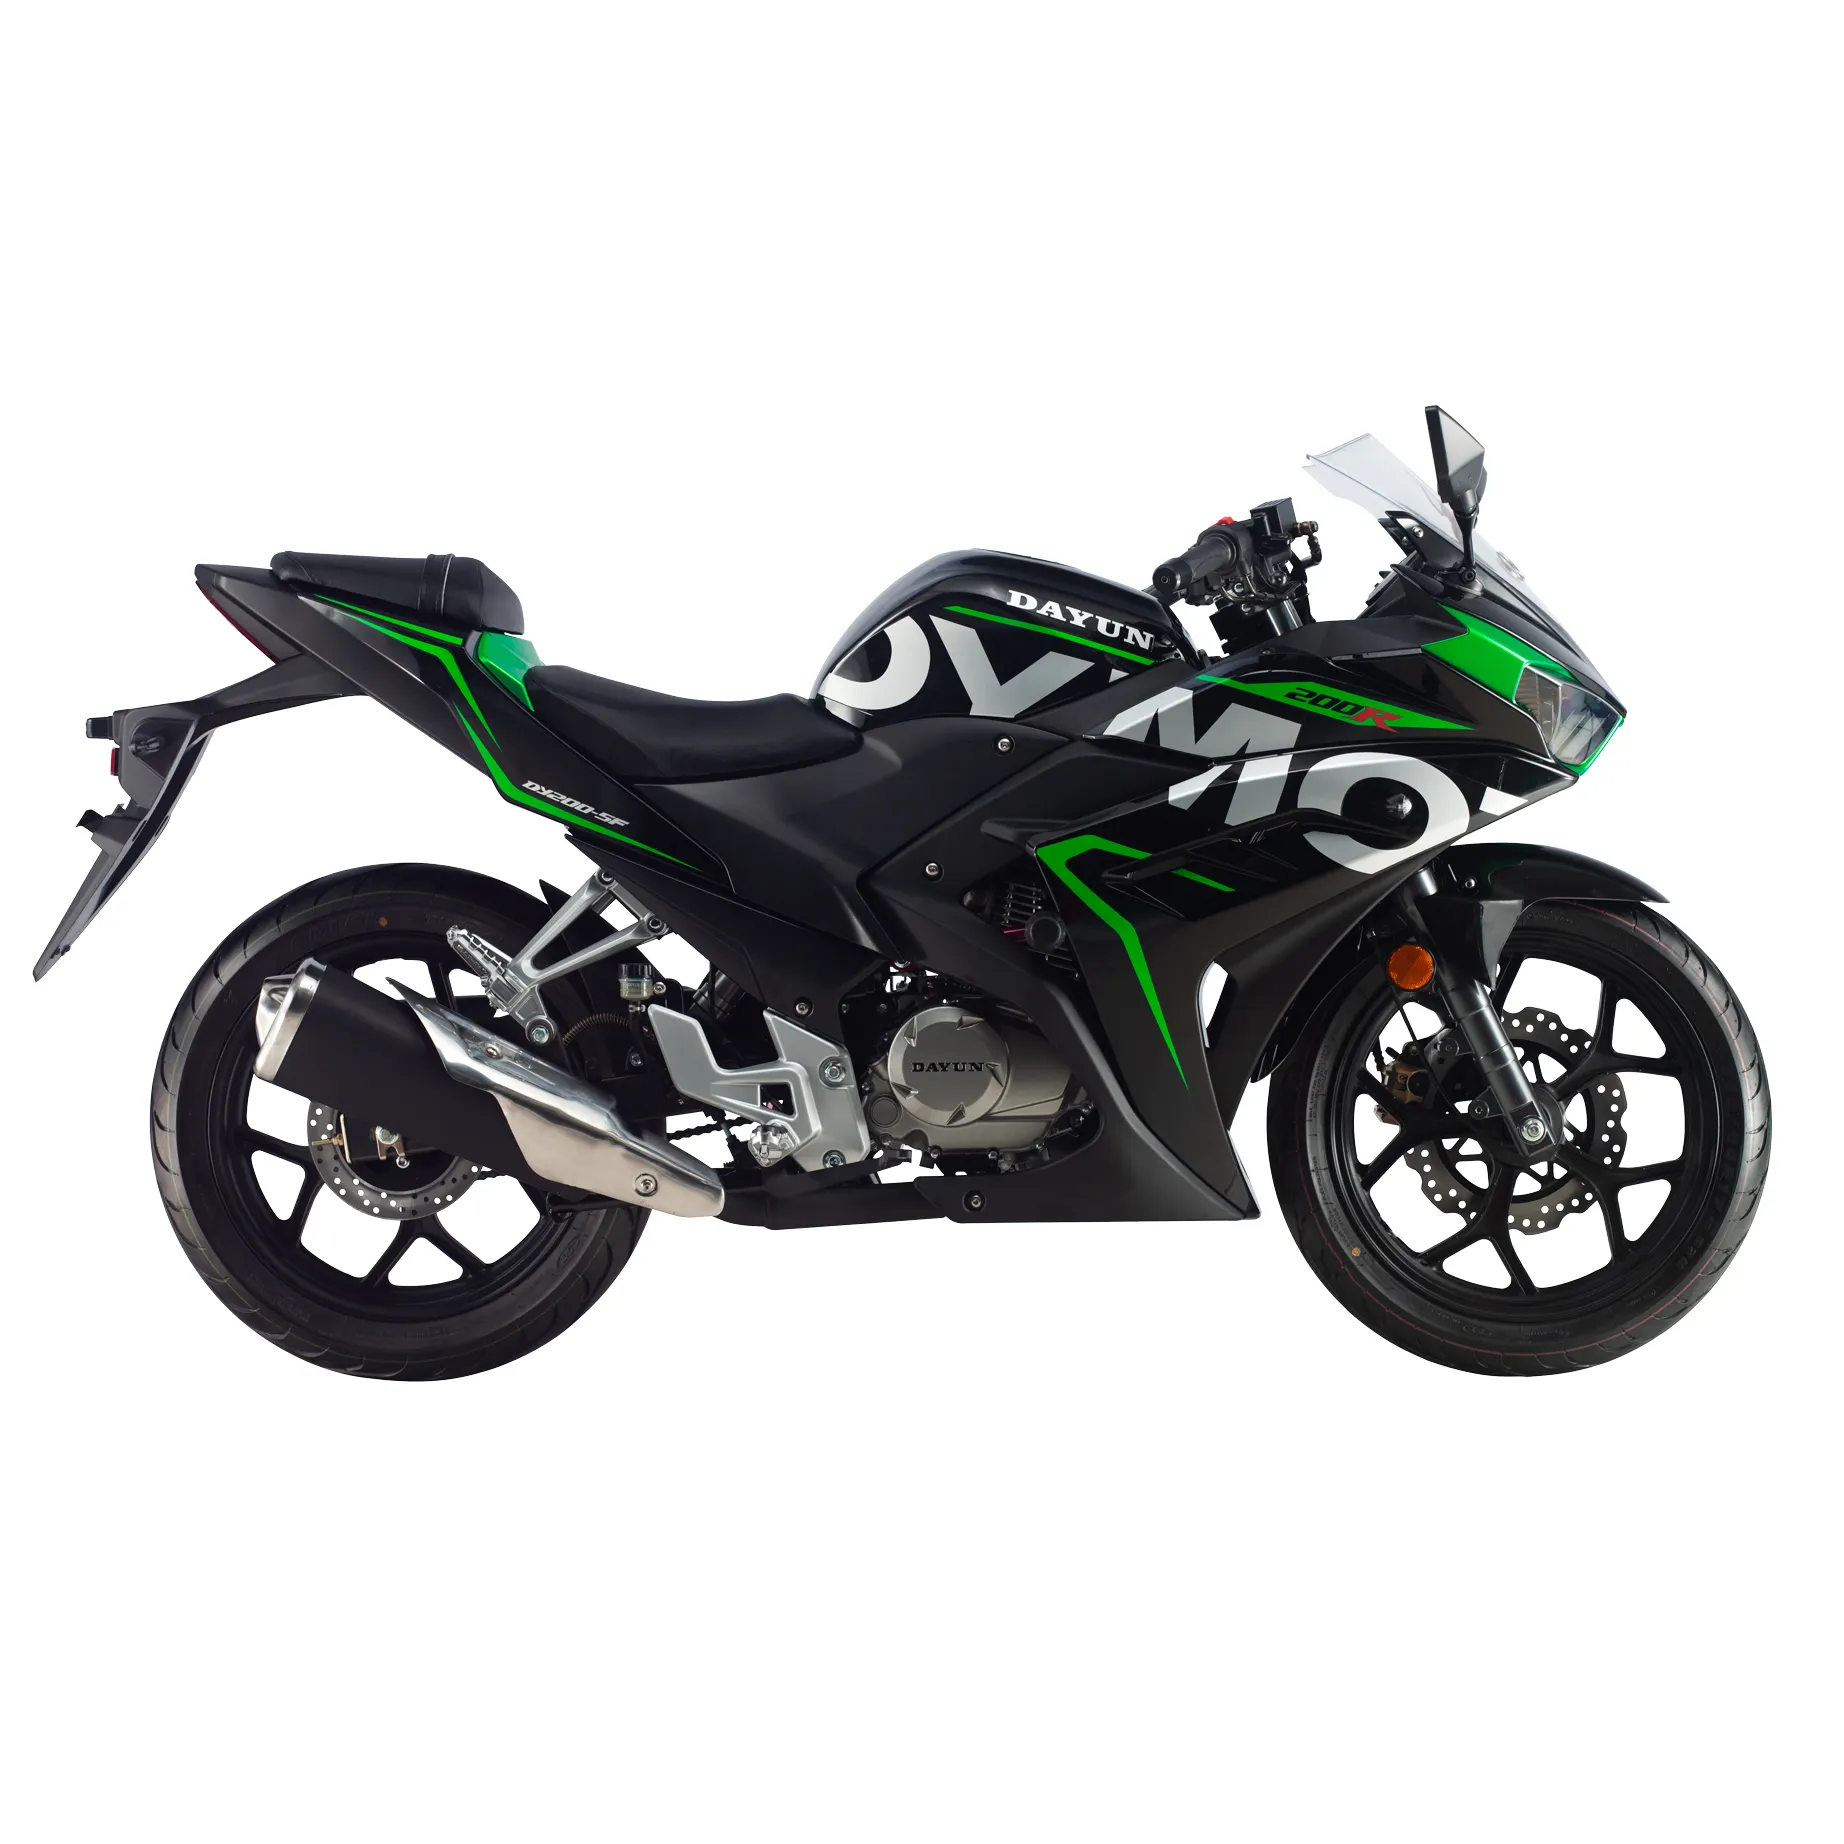 DAYUN-motocicleta de segunda mano, Moto asequible